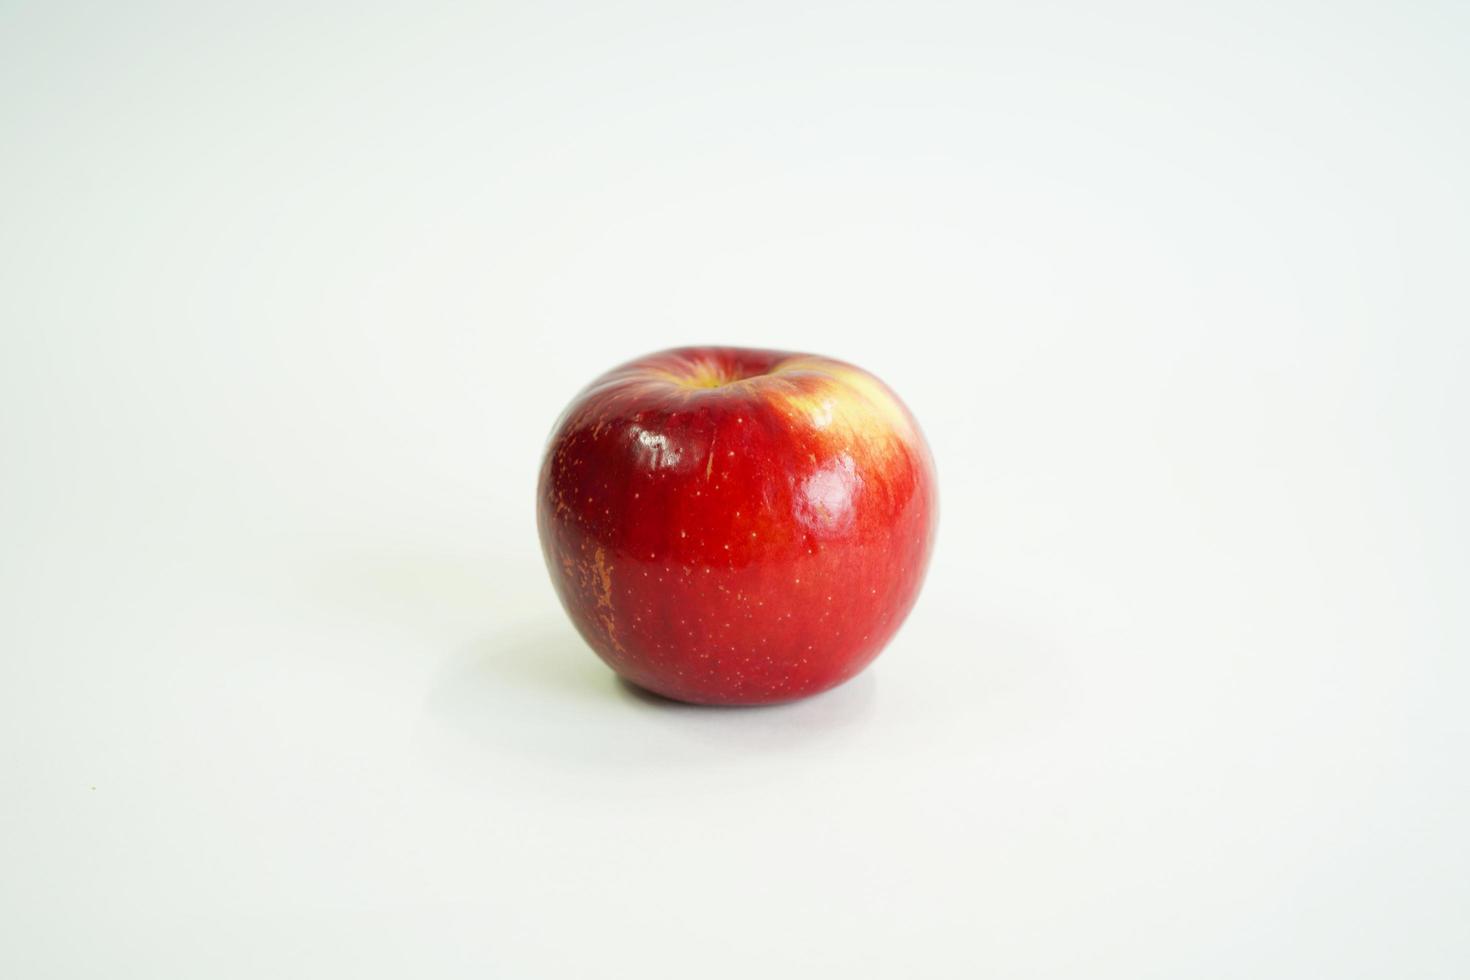 verse rode appel. biologische groenten en fruit foto